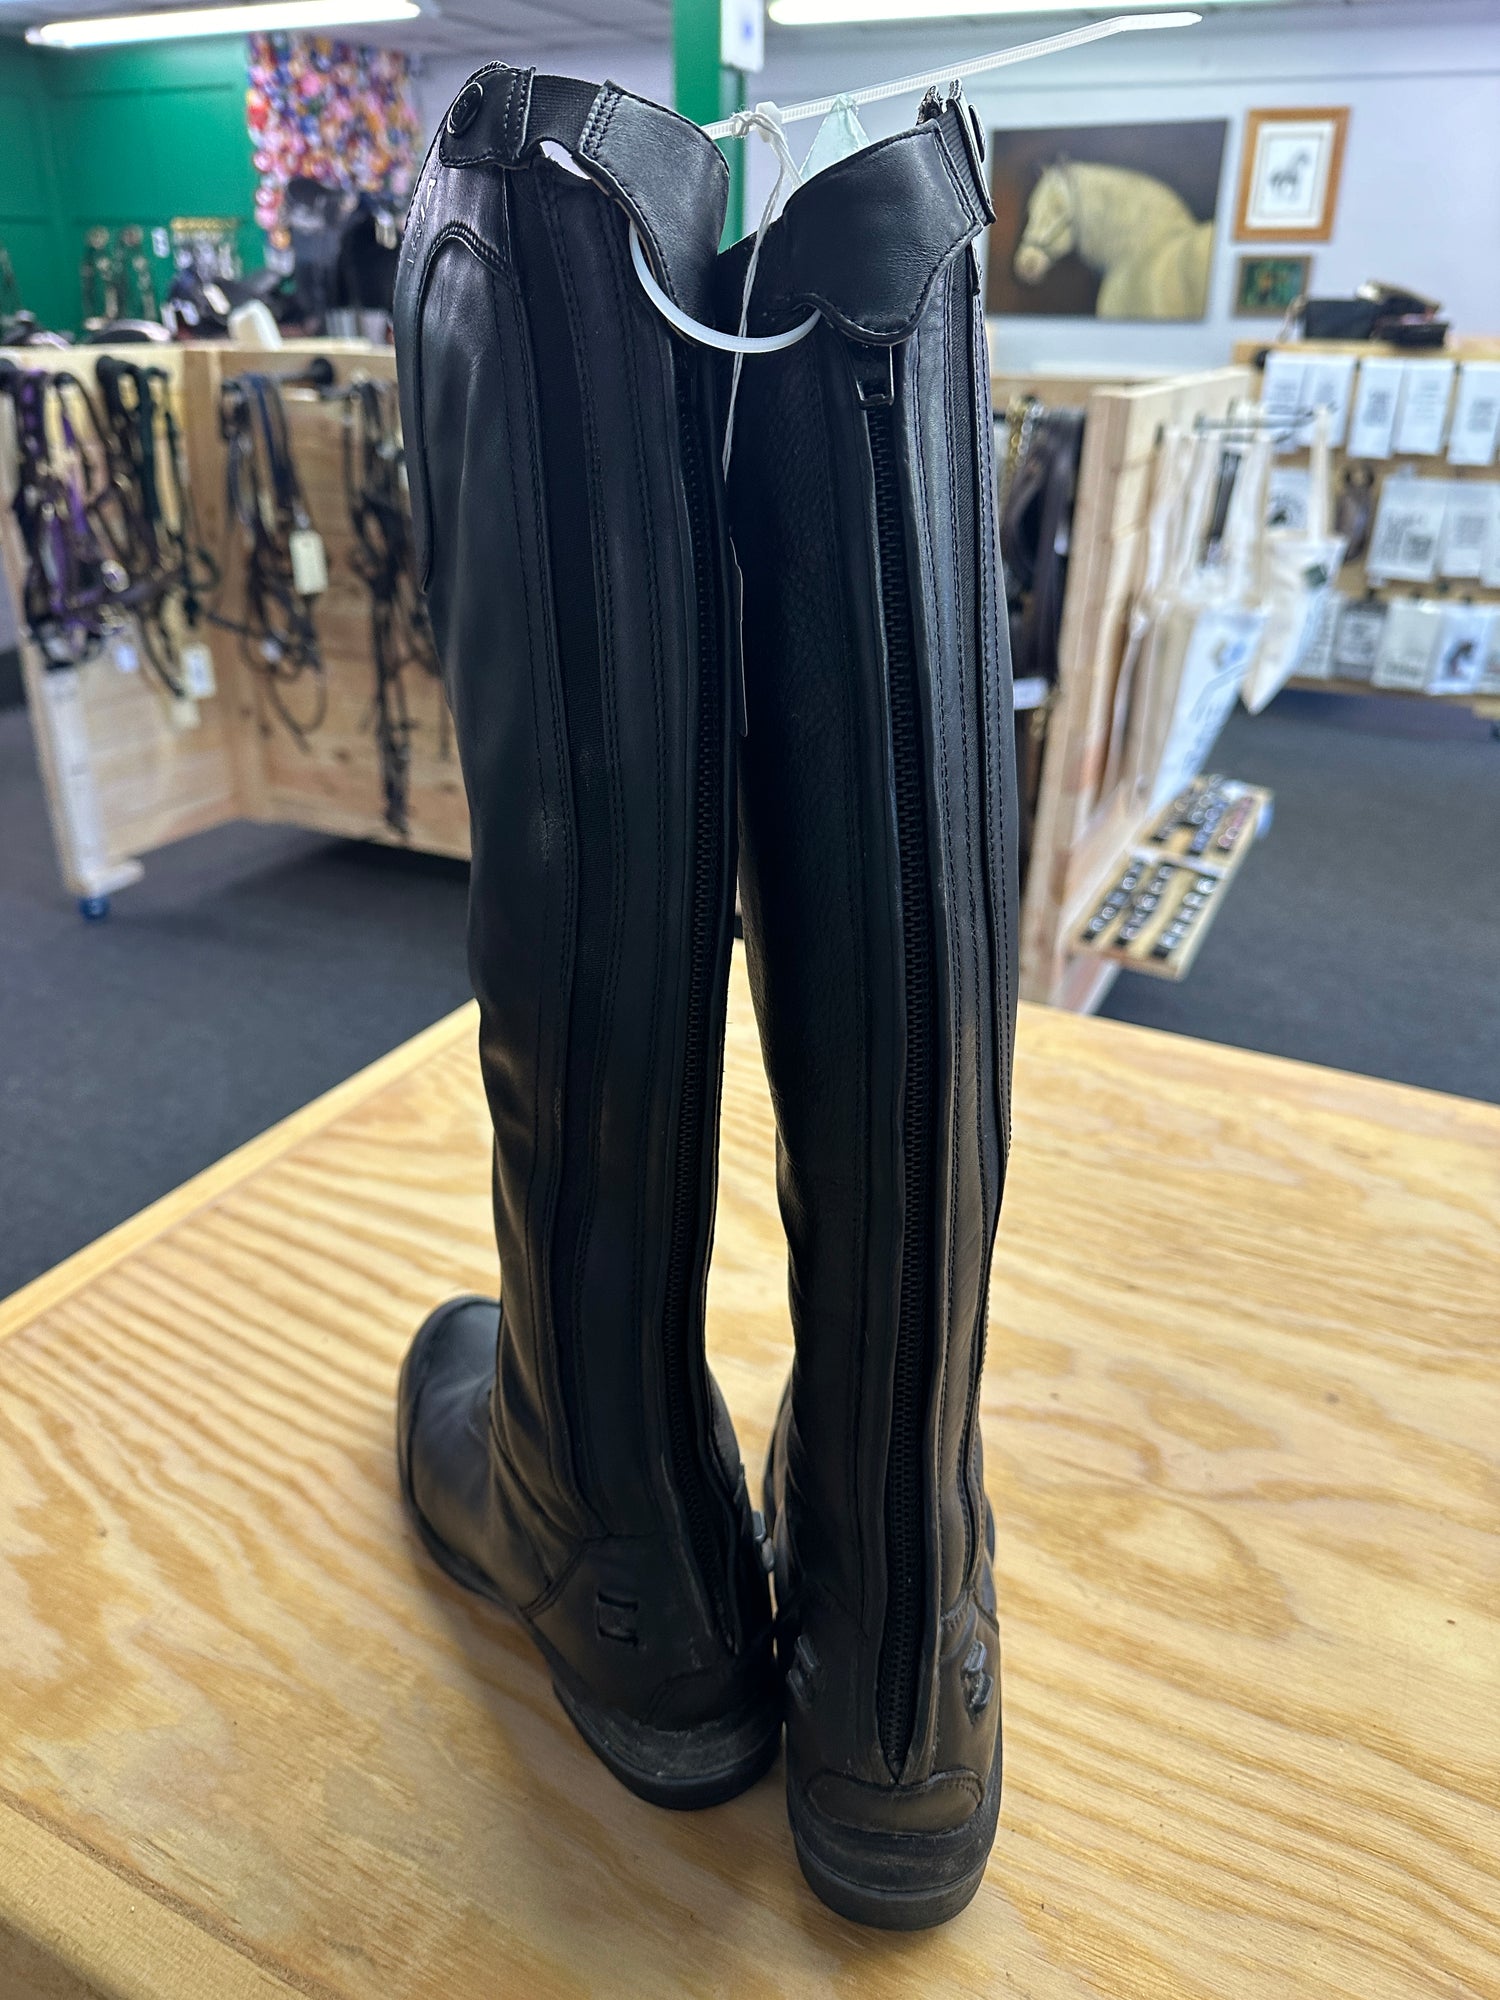 Women's Field Boots, Tall Black Ariats - Size 6.5